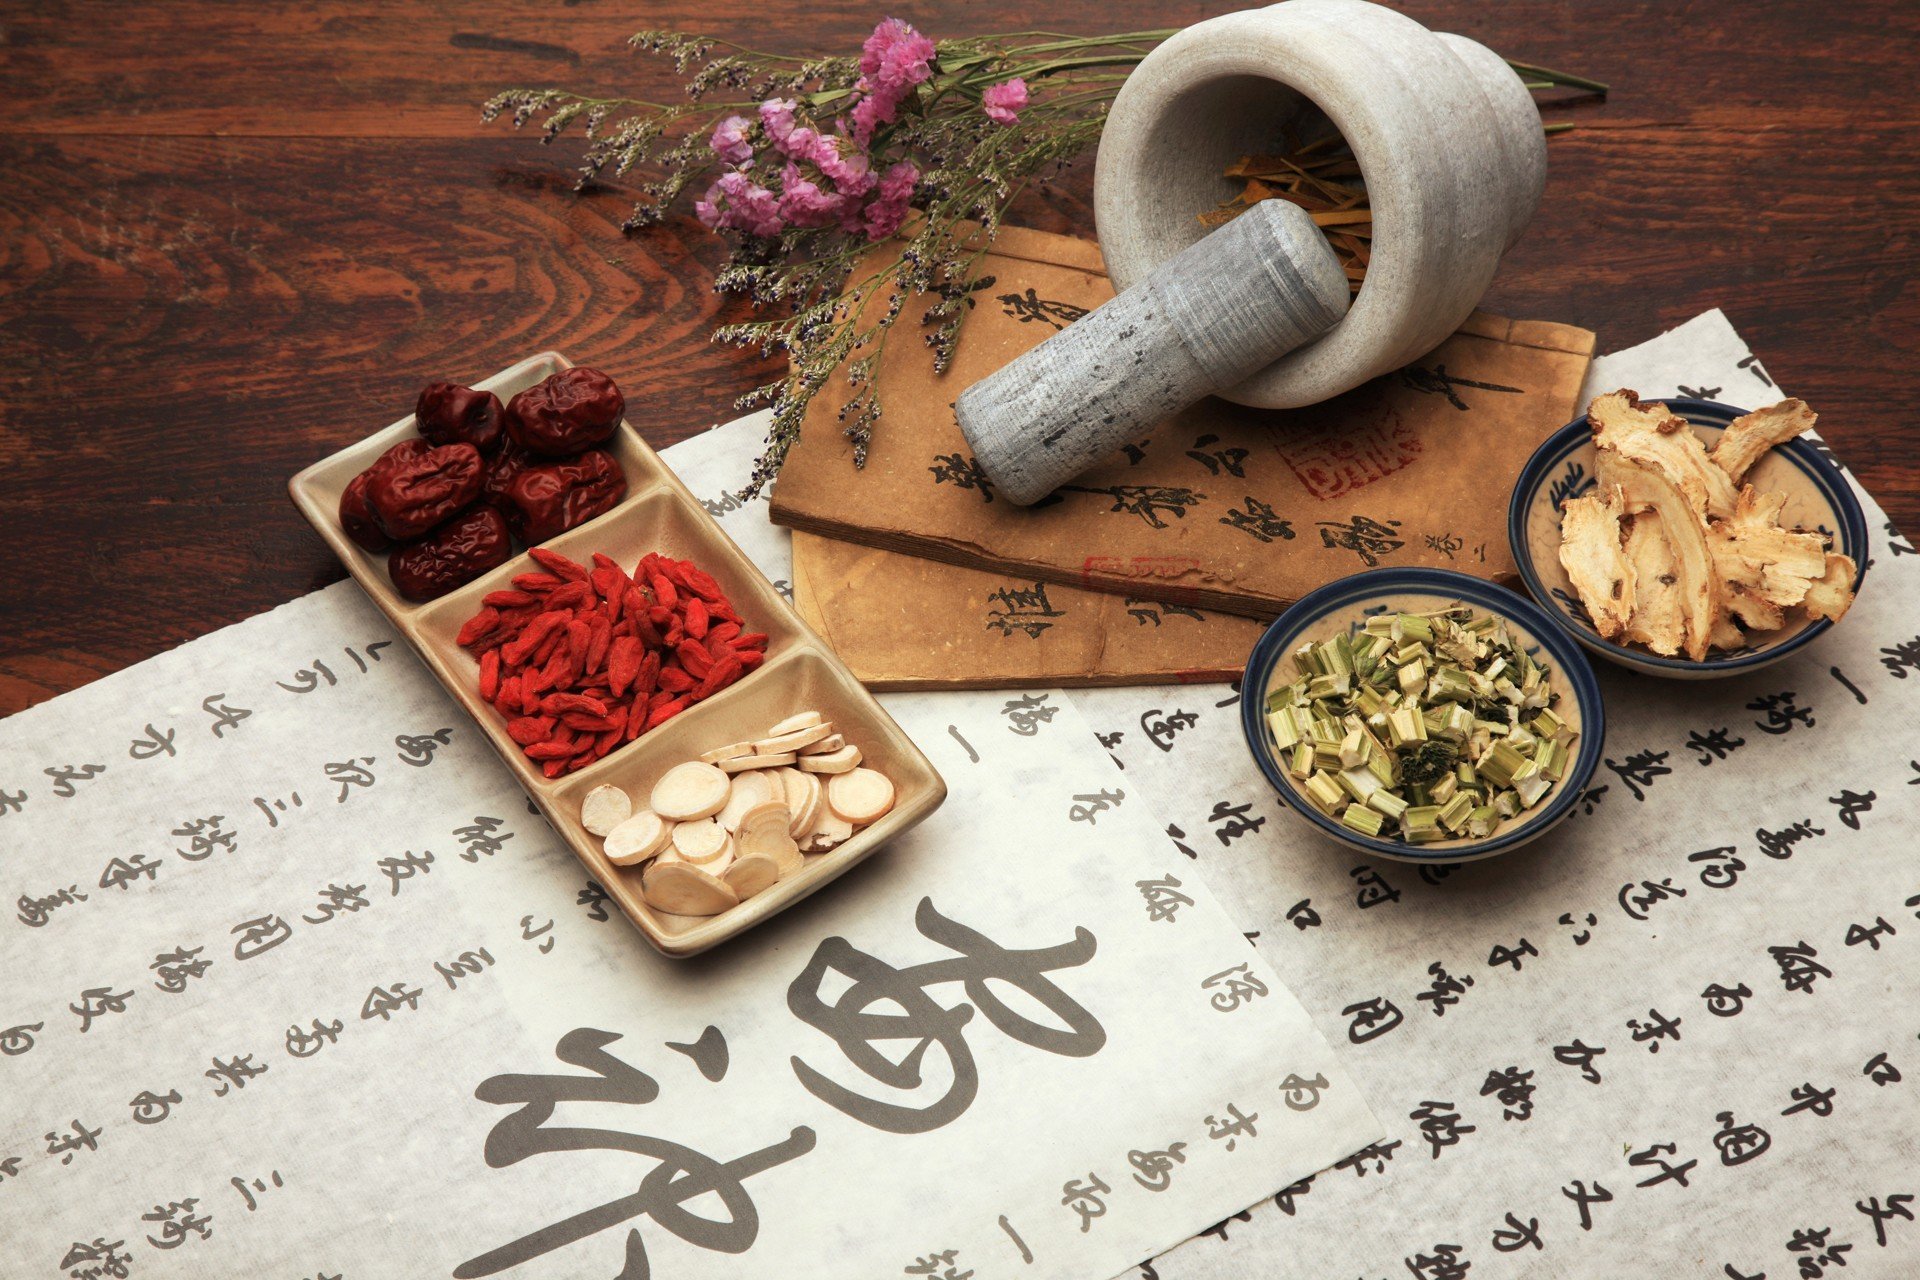 Chinesische Kräutermedizin und Tee